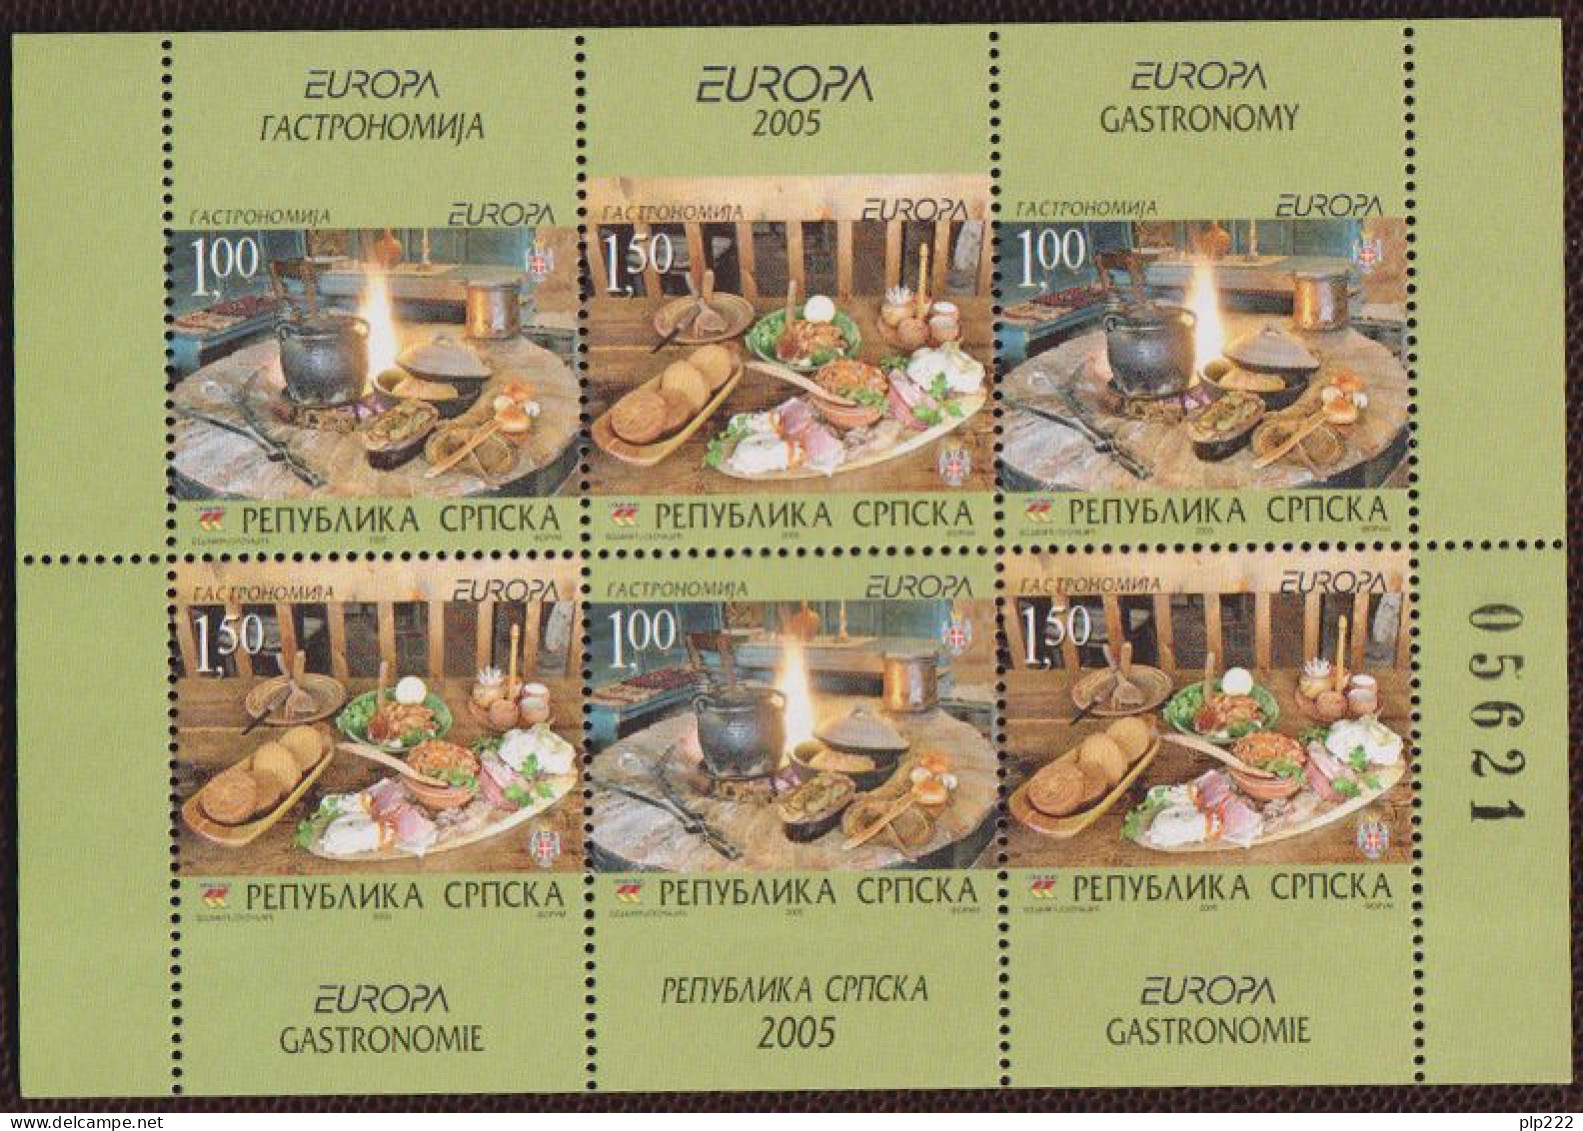 Europa CEPT 2005 Bosnia Serba S/S **/MNH VF - 2005